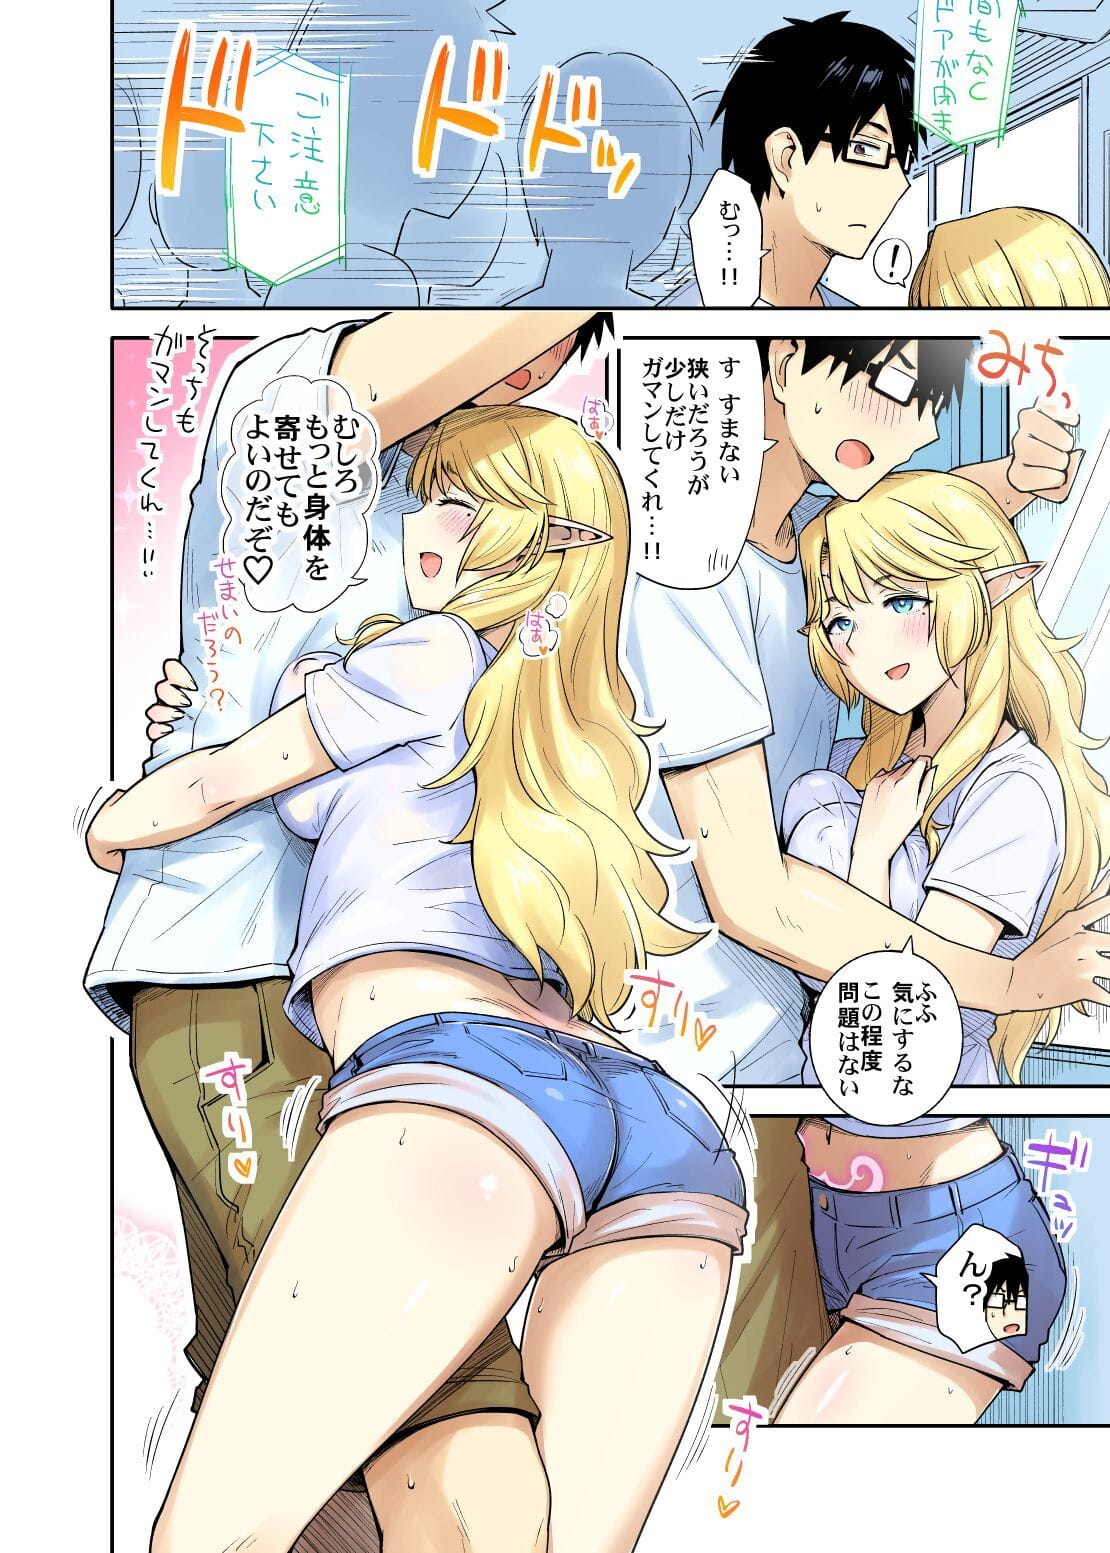 Rinjin Elf Manga page 1